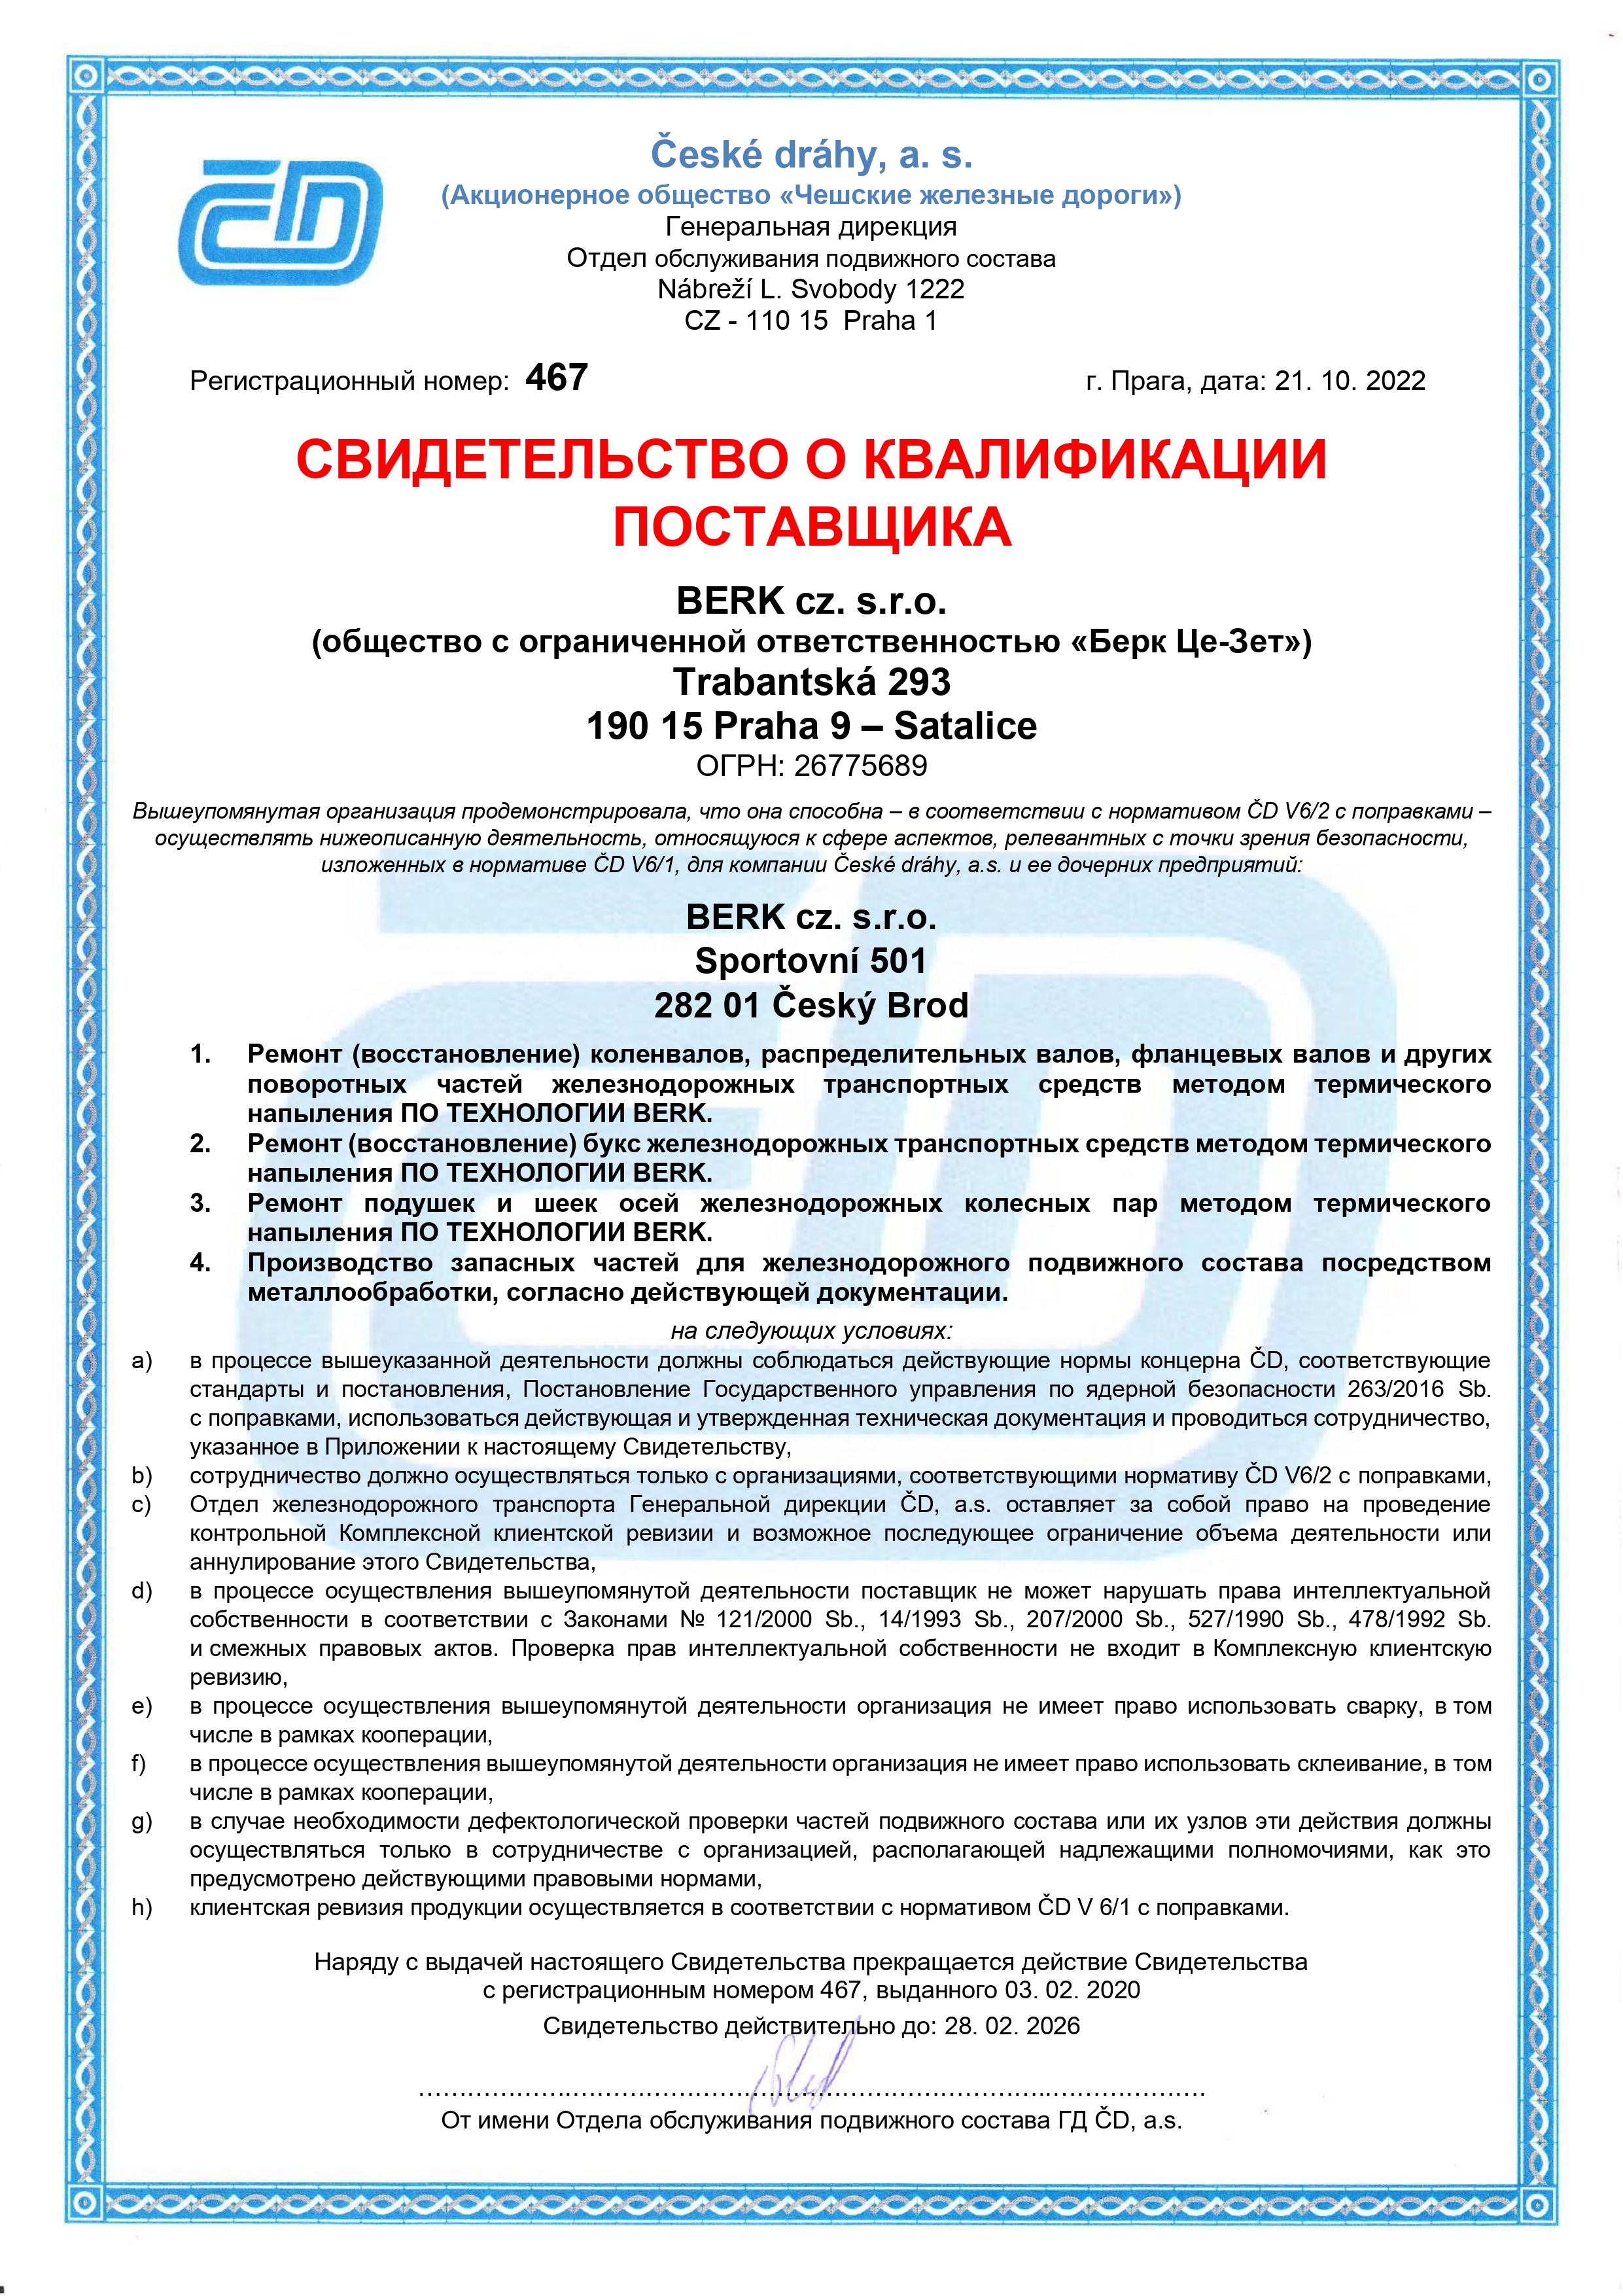 BERK_CD-certifikat_do-20230228_ru